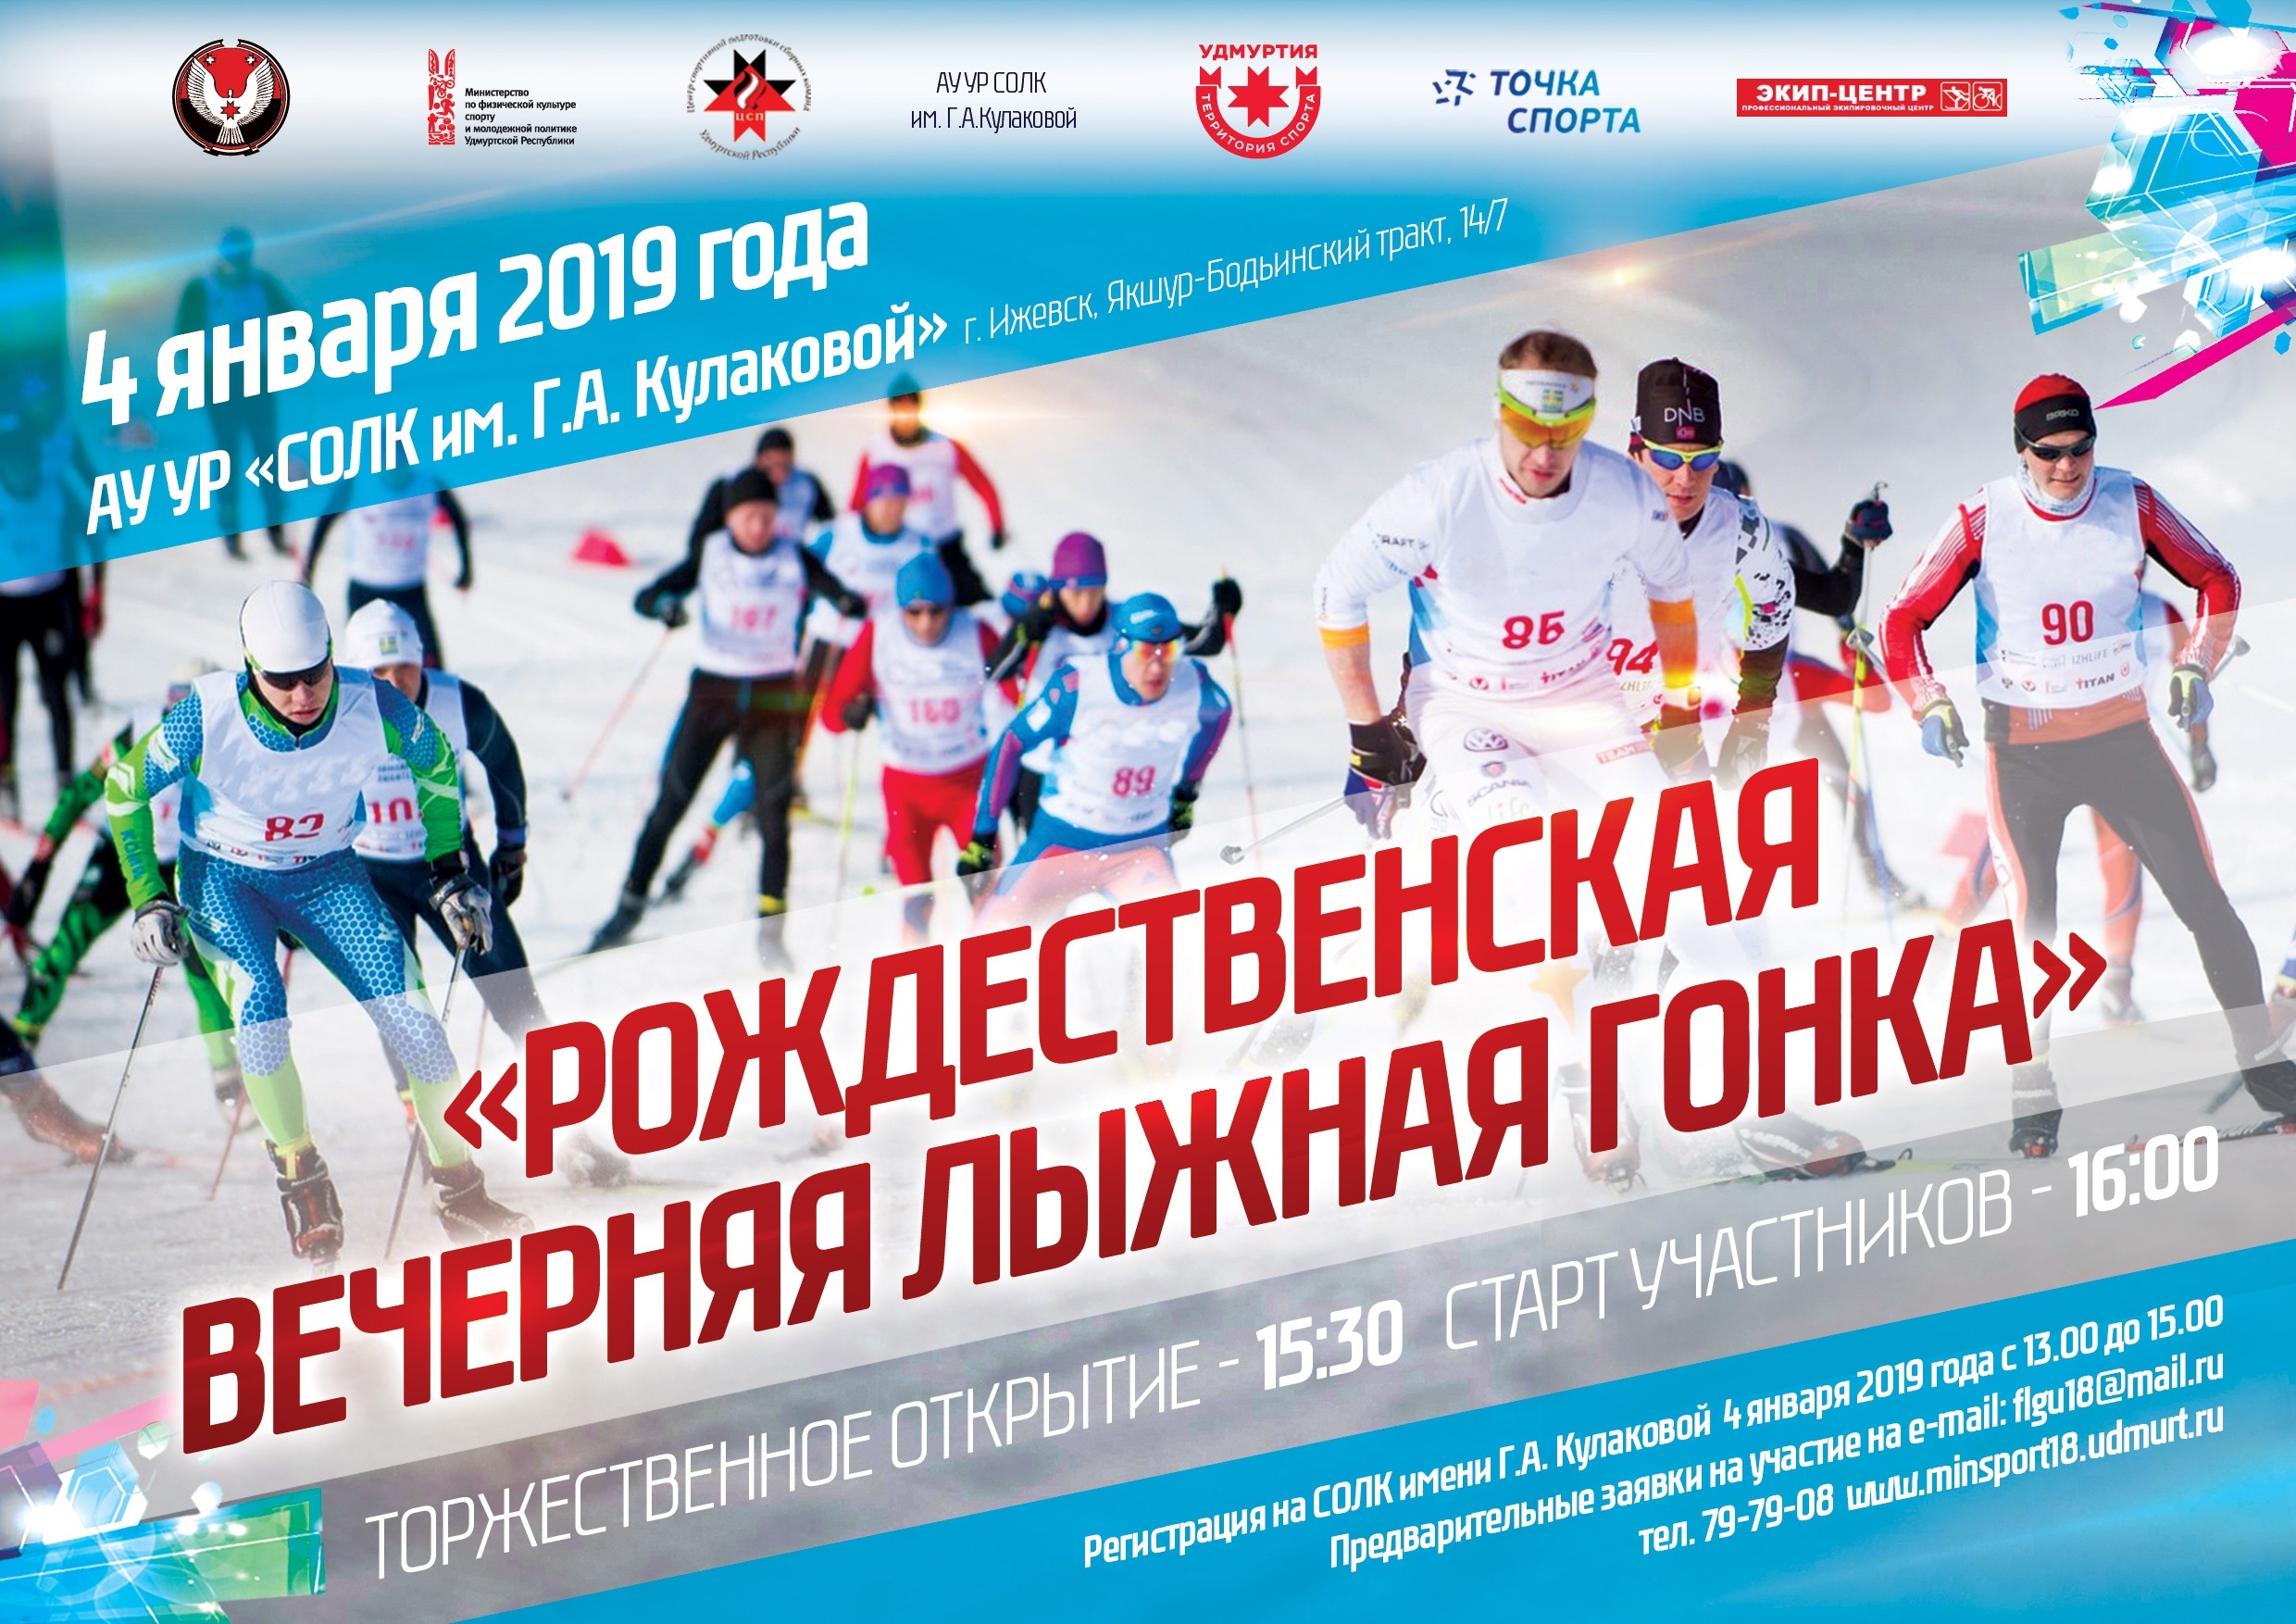 Открытые соревнования «Рождественская вечерняя лыжная гонка» состоятся 4 января 2018 года.